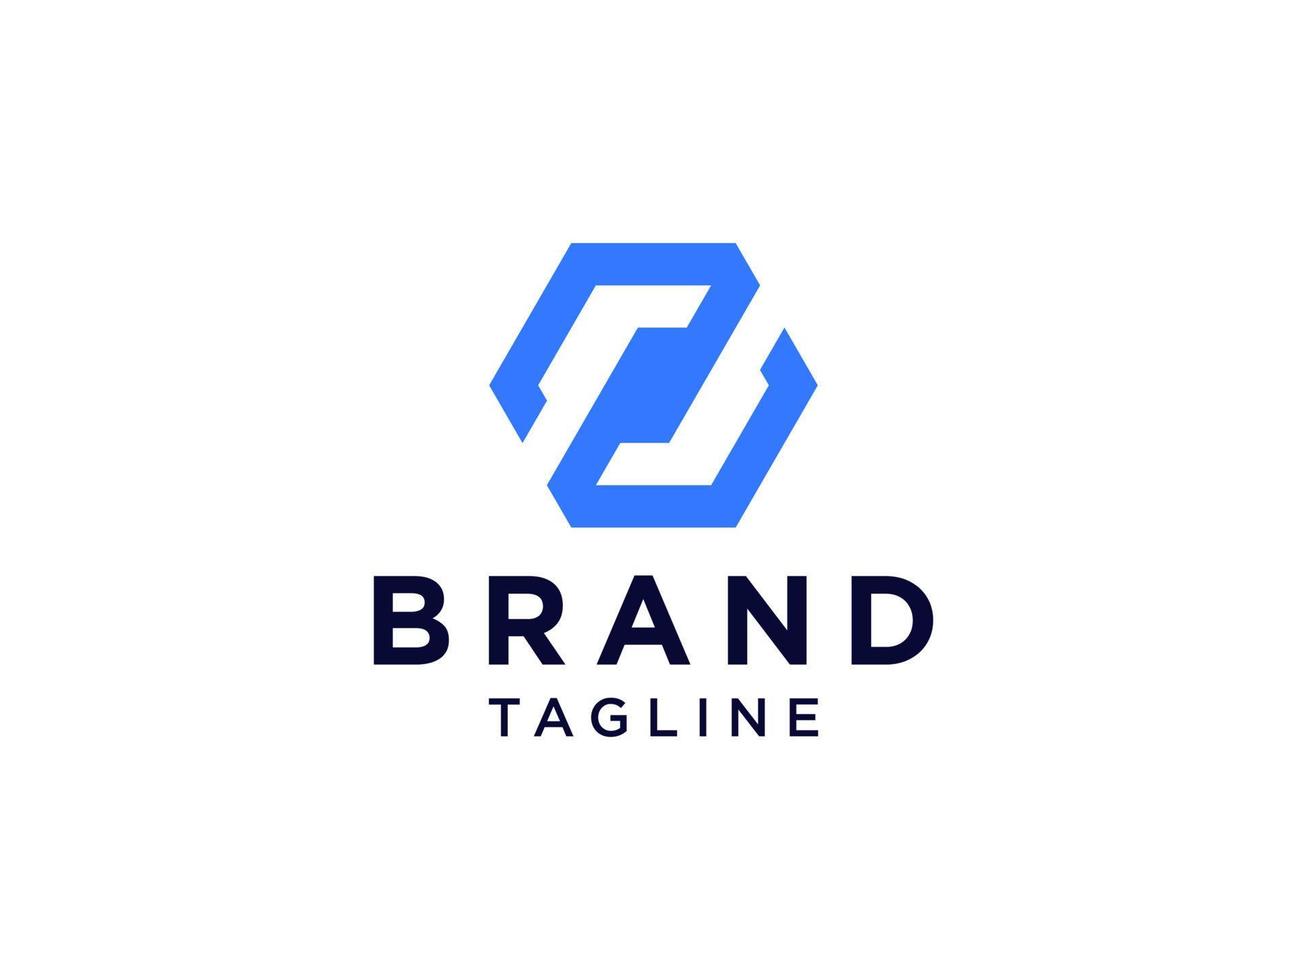 logo abstrait de la lettre initiale z. style de ligne géométrique carré bleu clair isolé sur fond blanc. utilisable pour les logos d'entreprise et de marque. élément de modèle de conception de logo vectoriel plat.